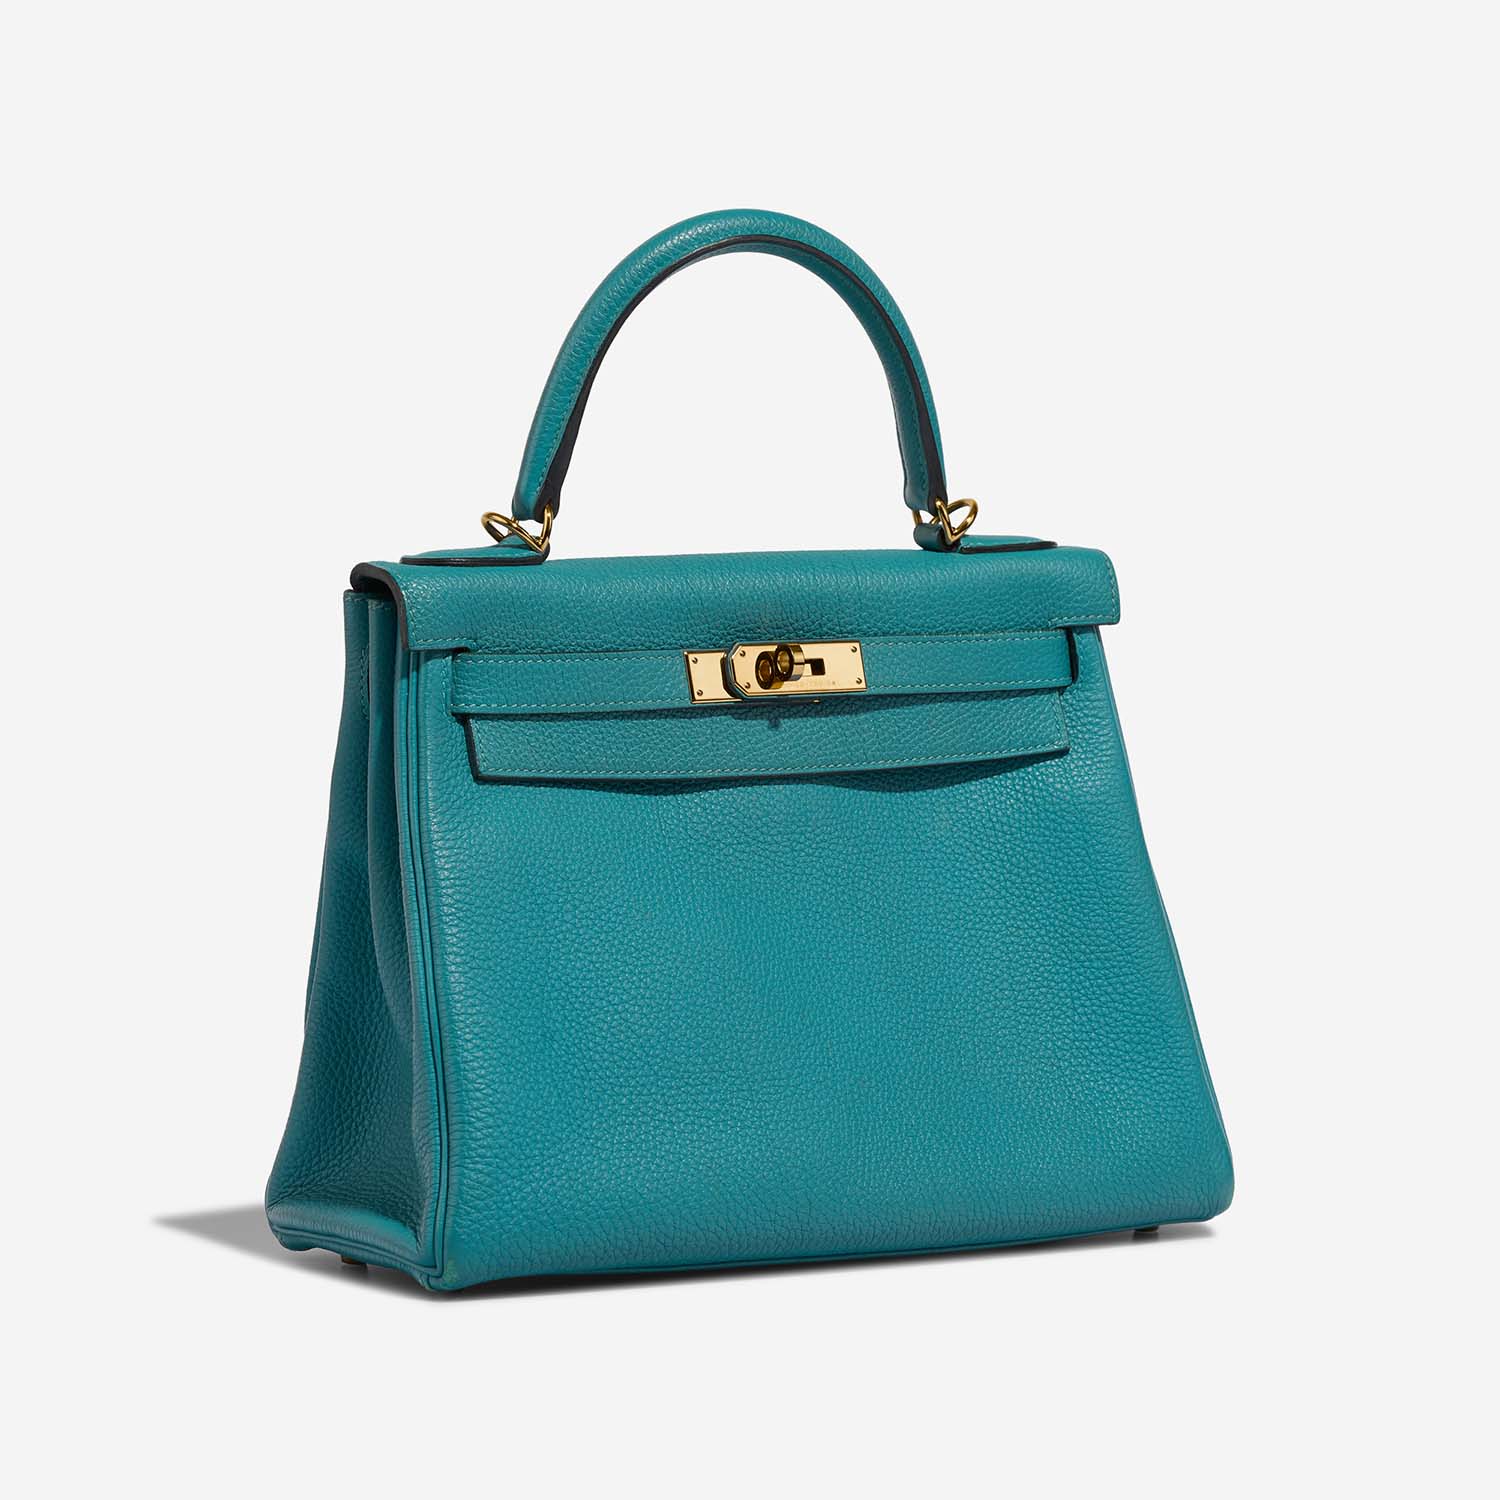 Hermès Kelly 28 BleuPaon Side Front | Verkaufen Sie Ihre Designer-Tasche auf Saclab.com